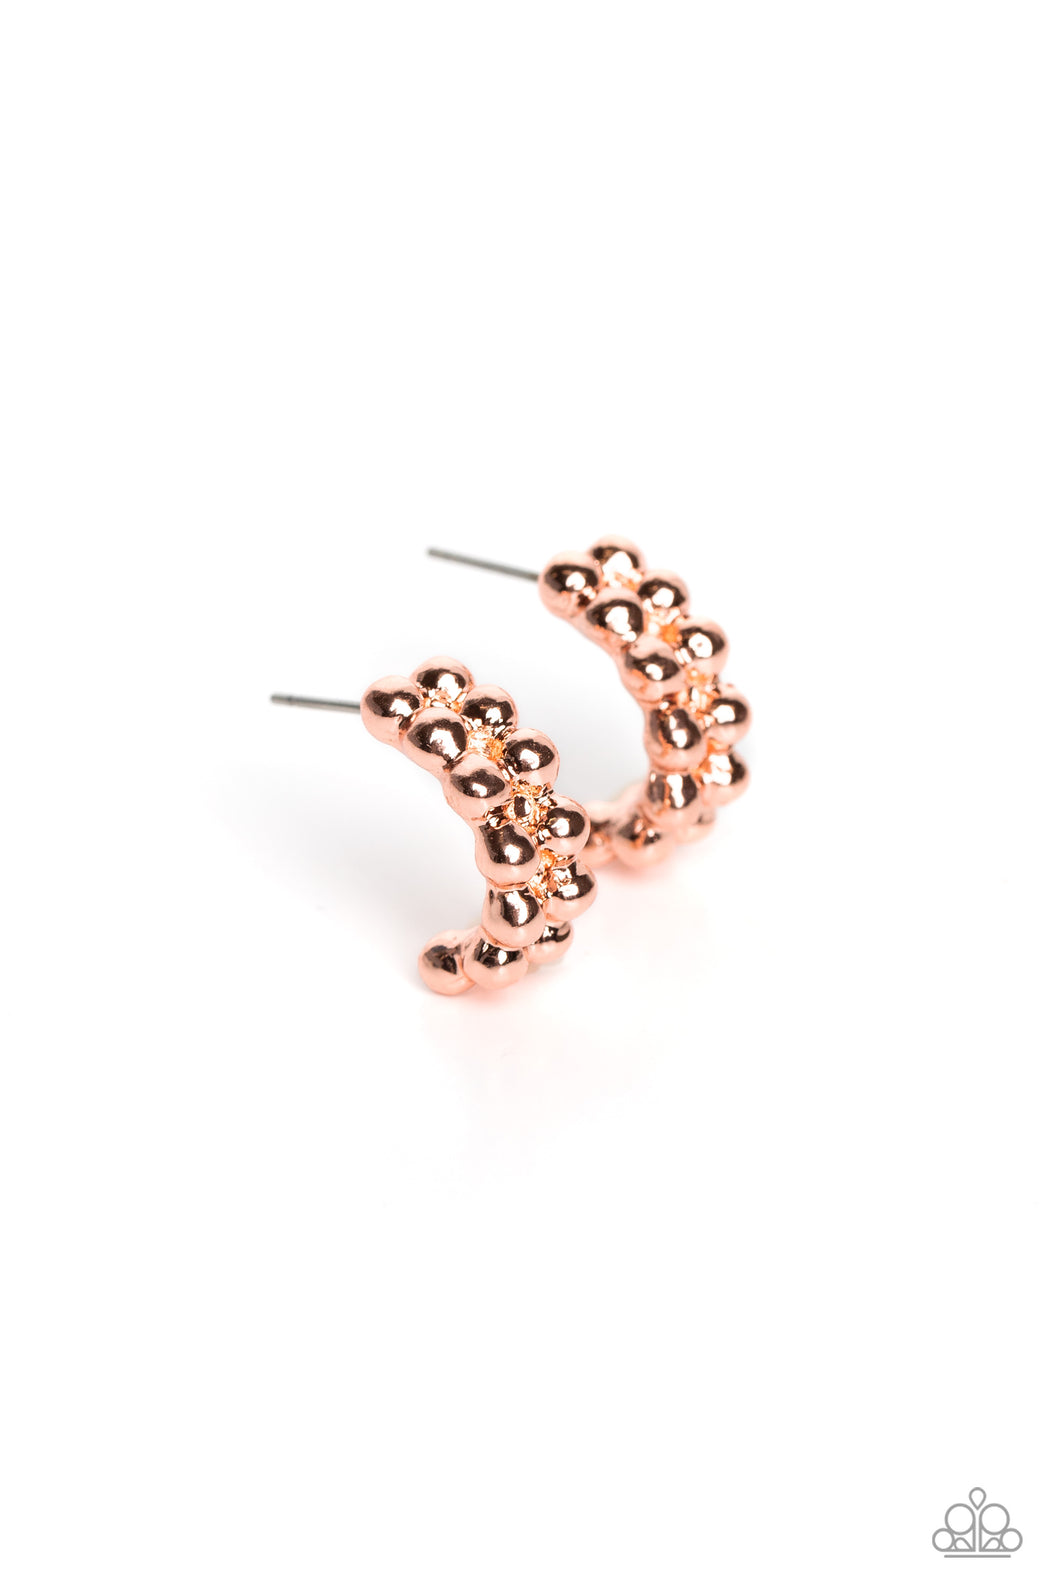 Bubbling Beauty - Copper Earring